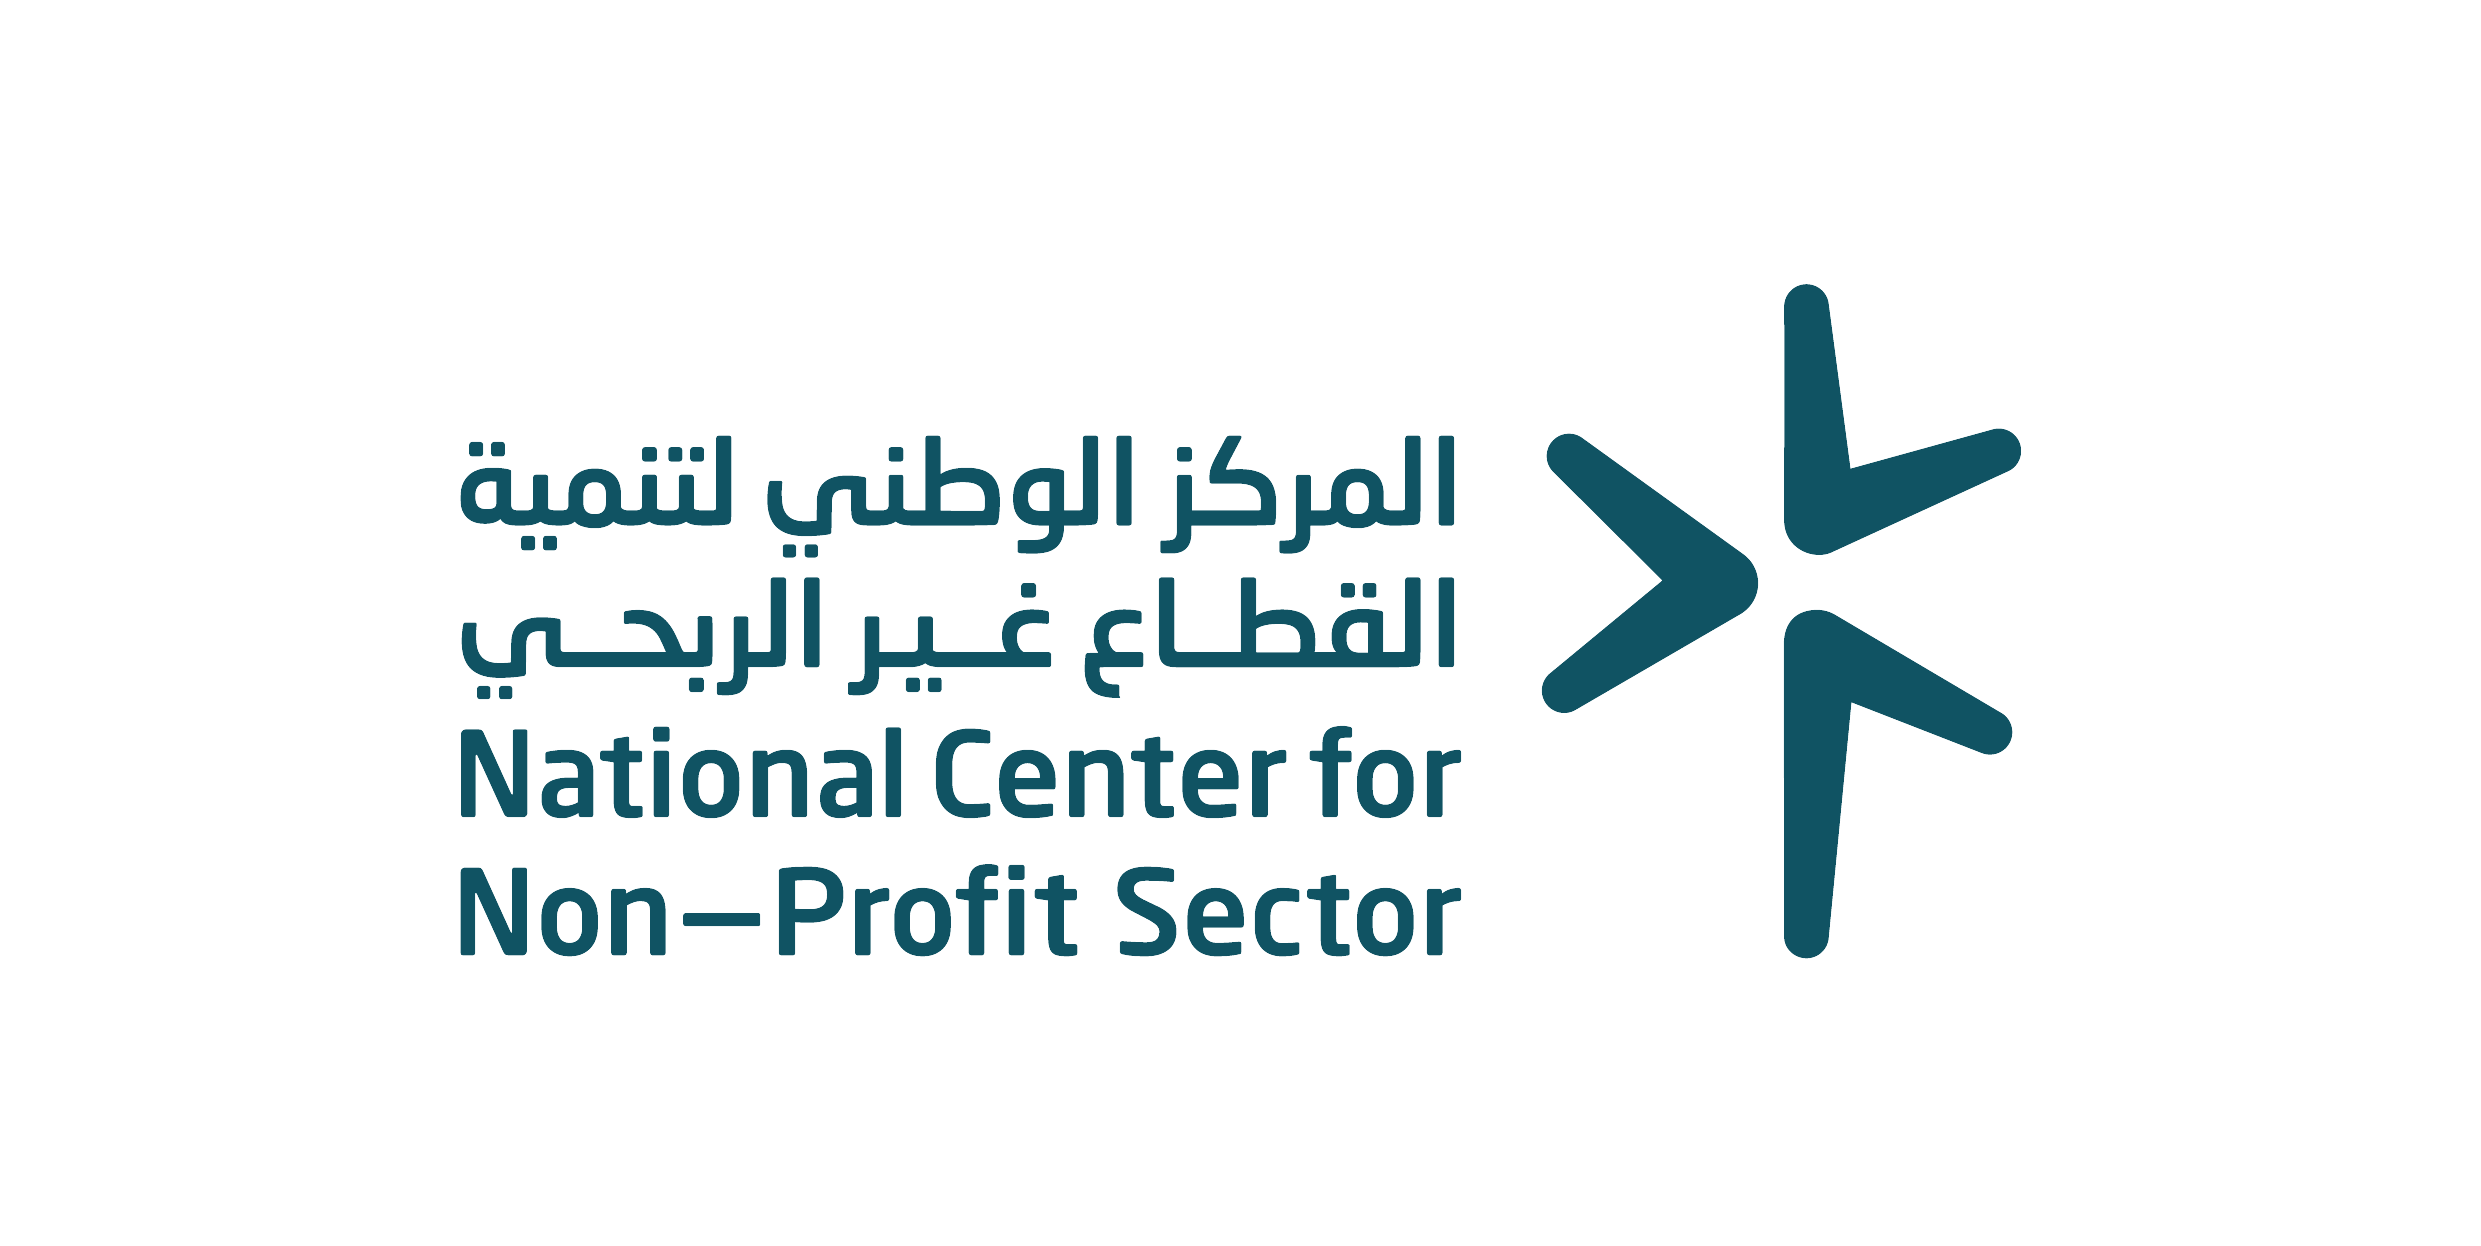 الهيئة العامة للمنشآت الصغيرة والمتوسطة والمركز الوطني لتنمية القطاع غير الربحي يوقعان اتفاقية تفاهم لتطوير بيئة ريادة الأعمال الاجتماعية في السعودية